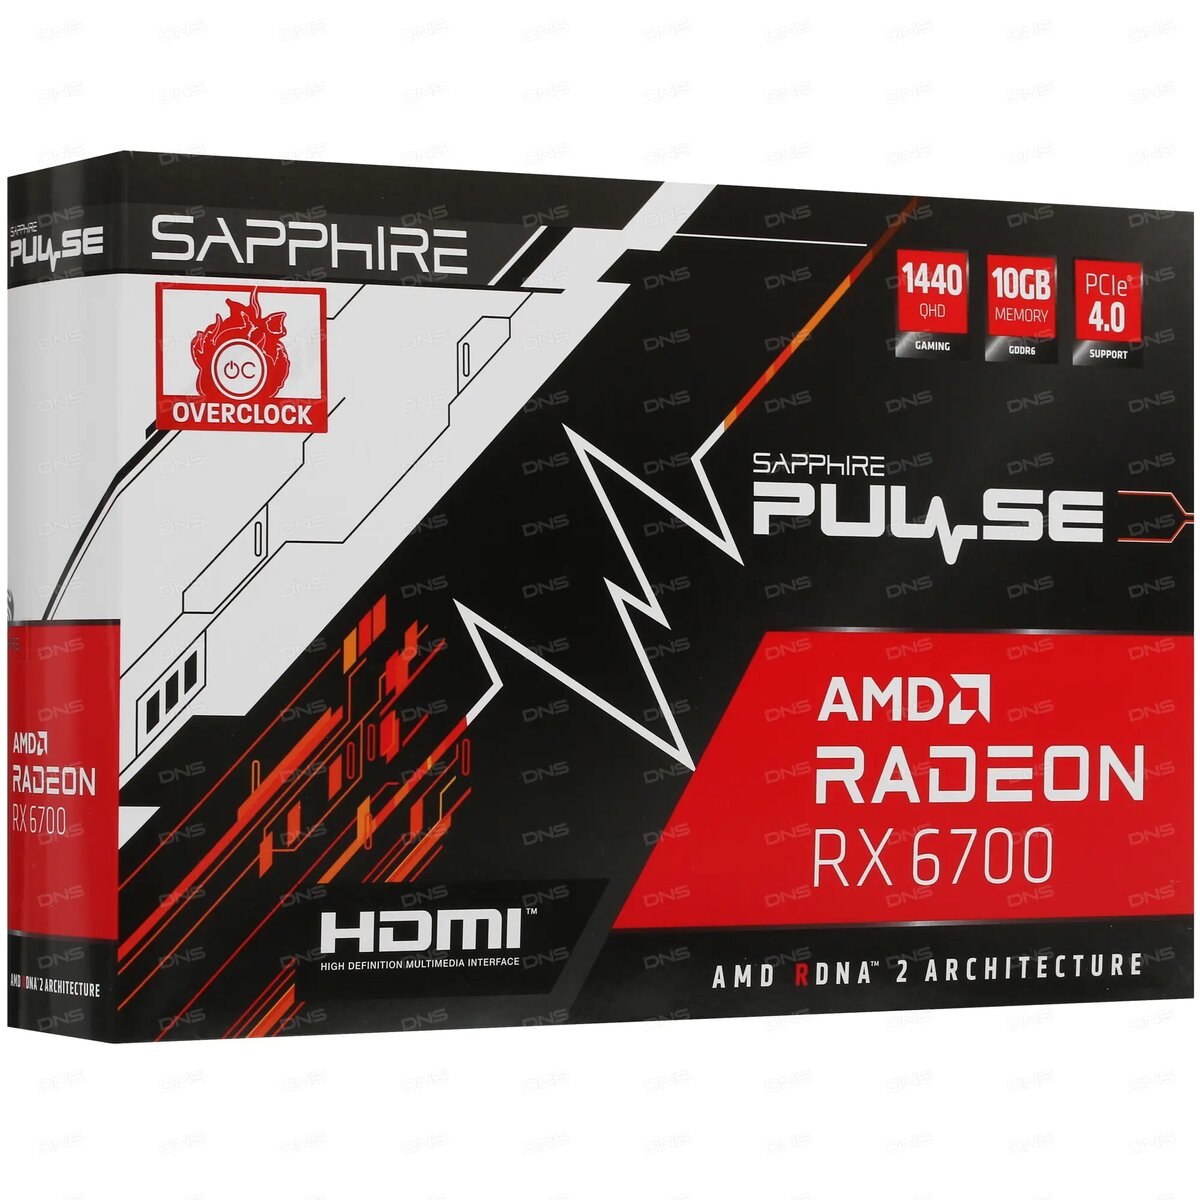  Видеокарта Sapphire PULSE AMD Radeon RX 6700 – мощный инструмент для  достижения высокой производительности в играх. Она содержит архитектуру  AMD RDNA 2 и 10 ГБ памяти стандарта GDDR6.